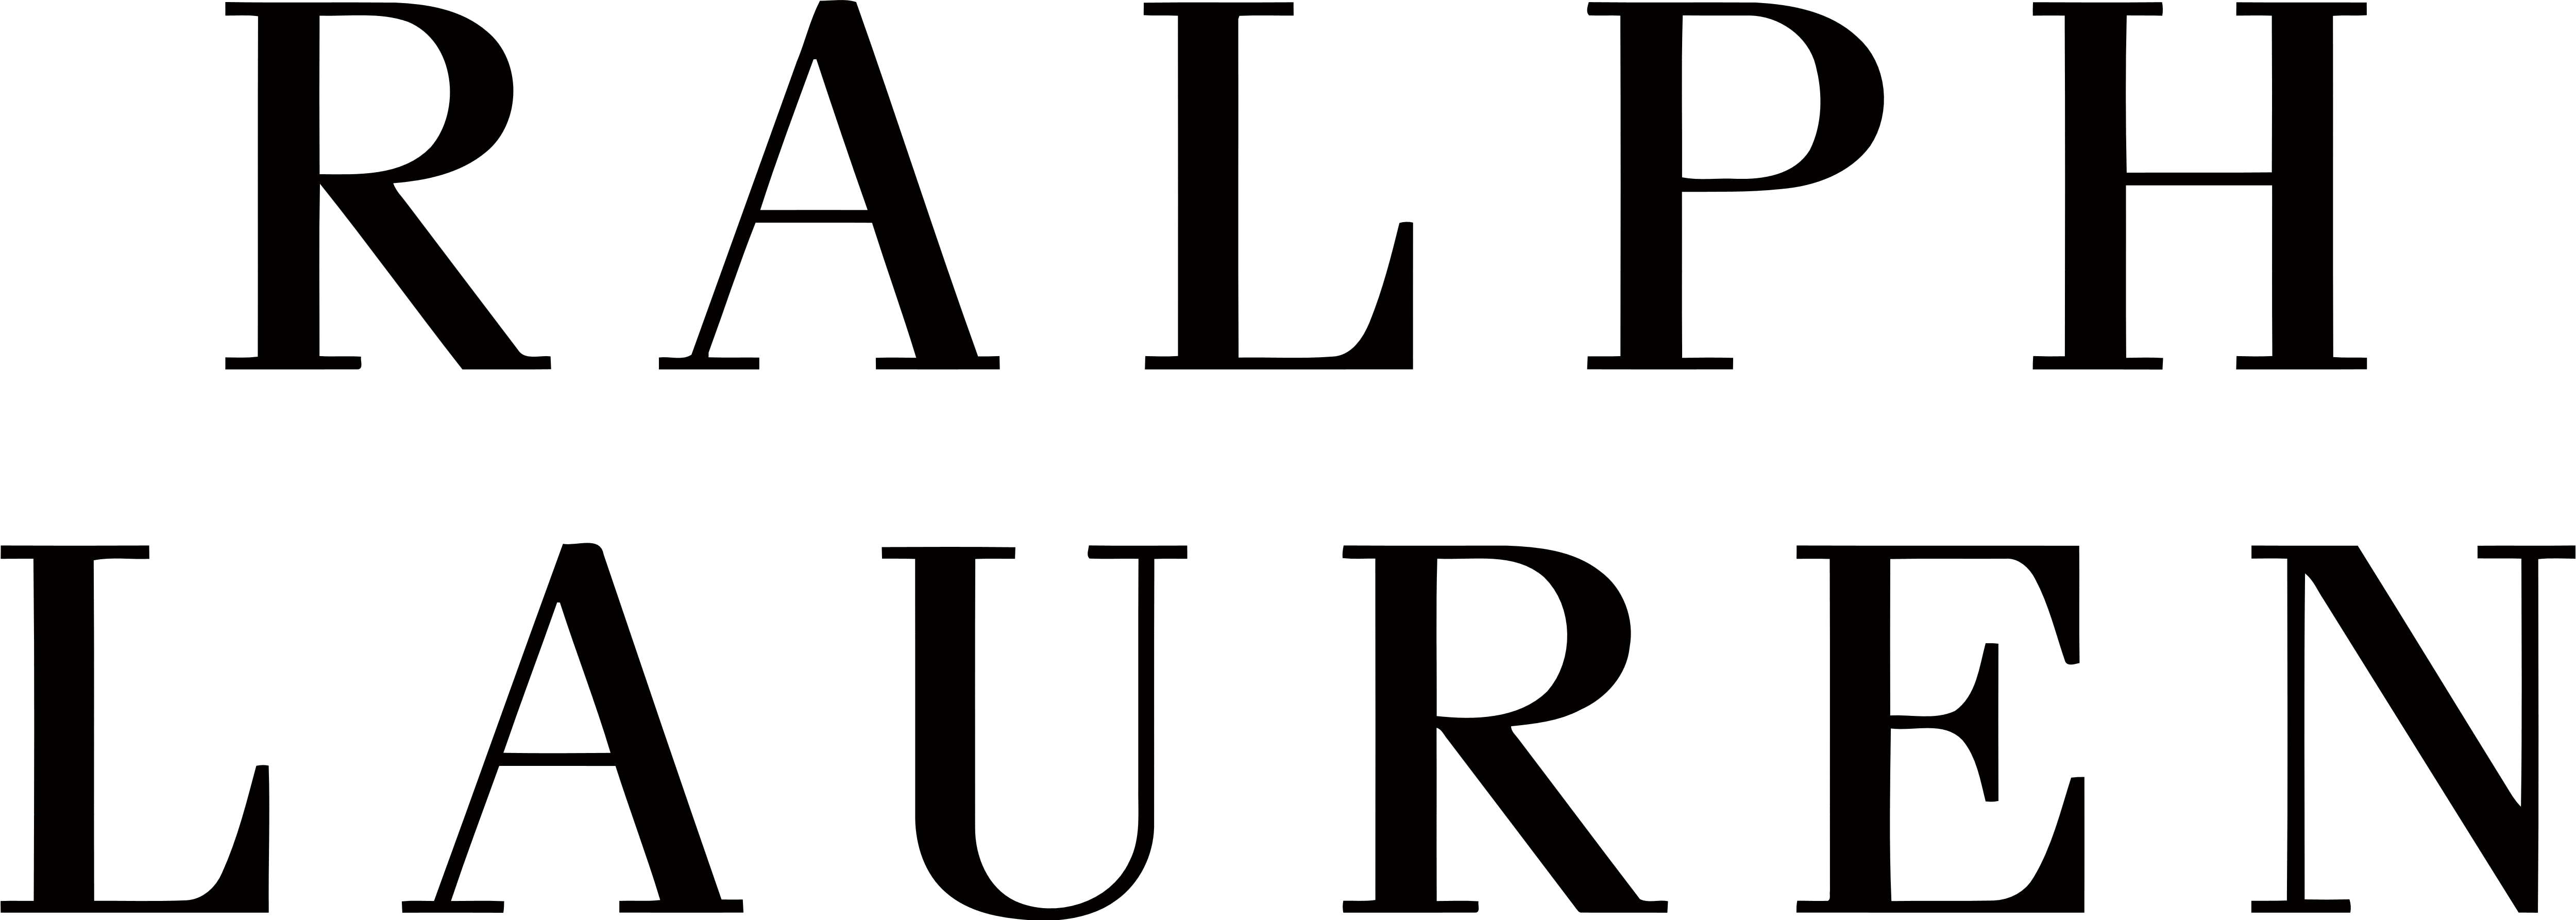 ralph lauren logo transparent